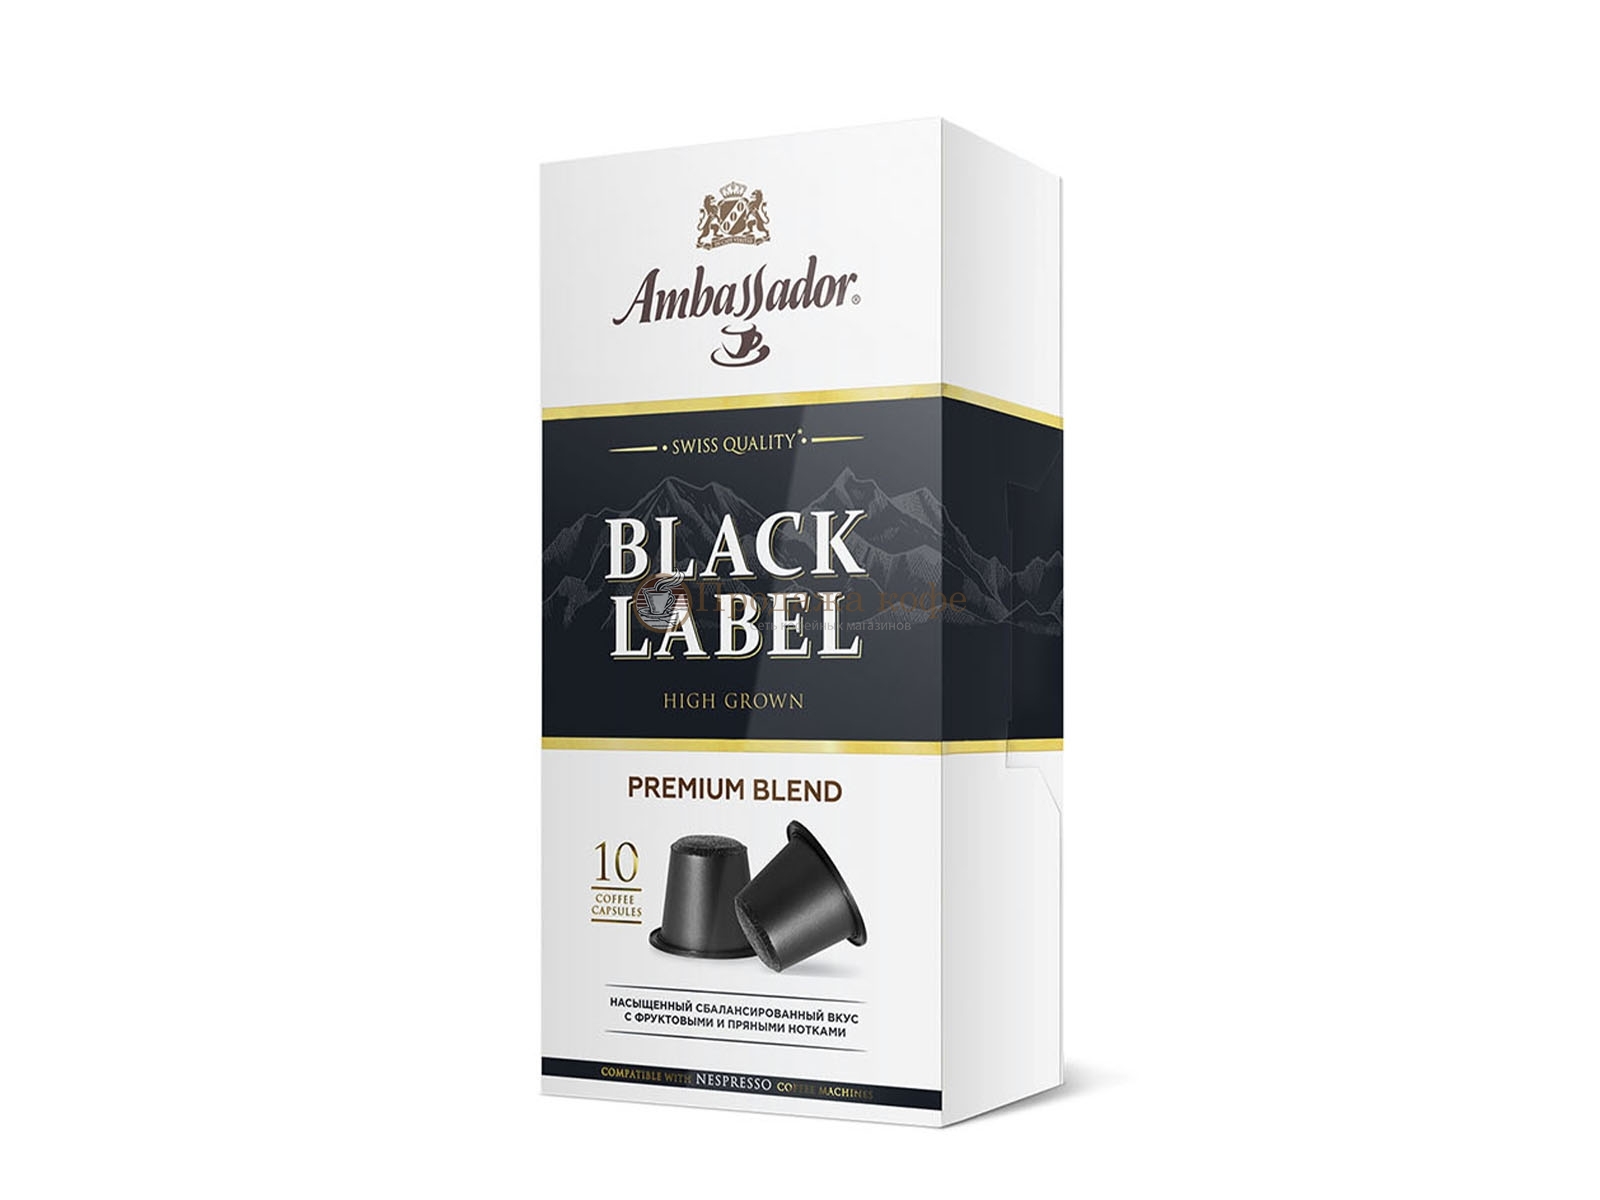 Кофе в капсулах Ambassador Black Label (Амбассадор Блек Лейбл), упаковка 10 капсул, формат NESPRESSO (Неспрессо)